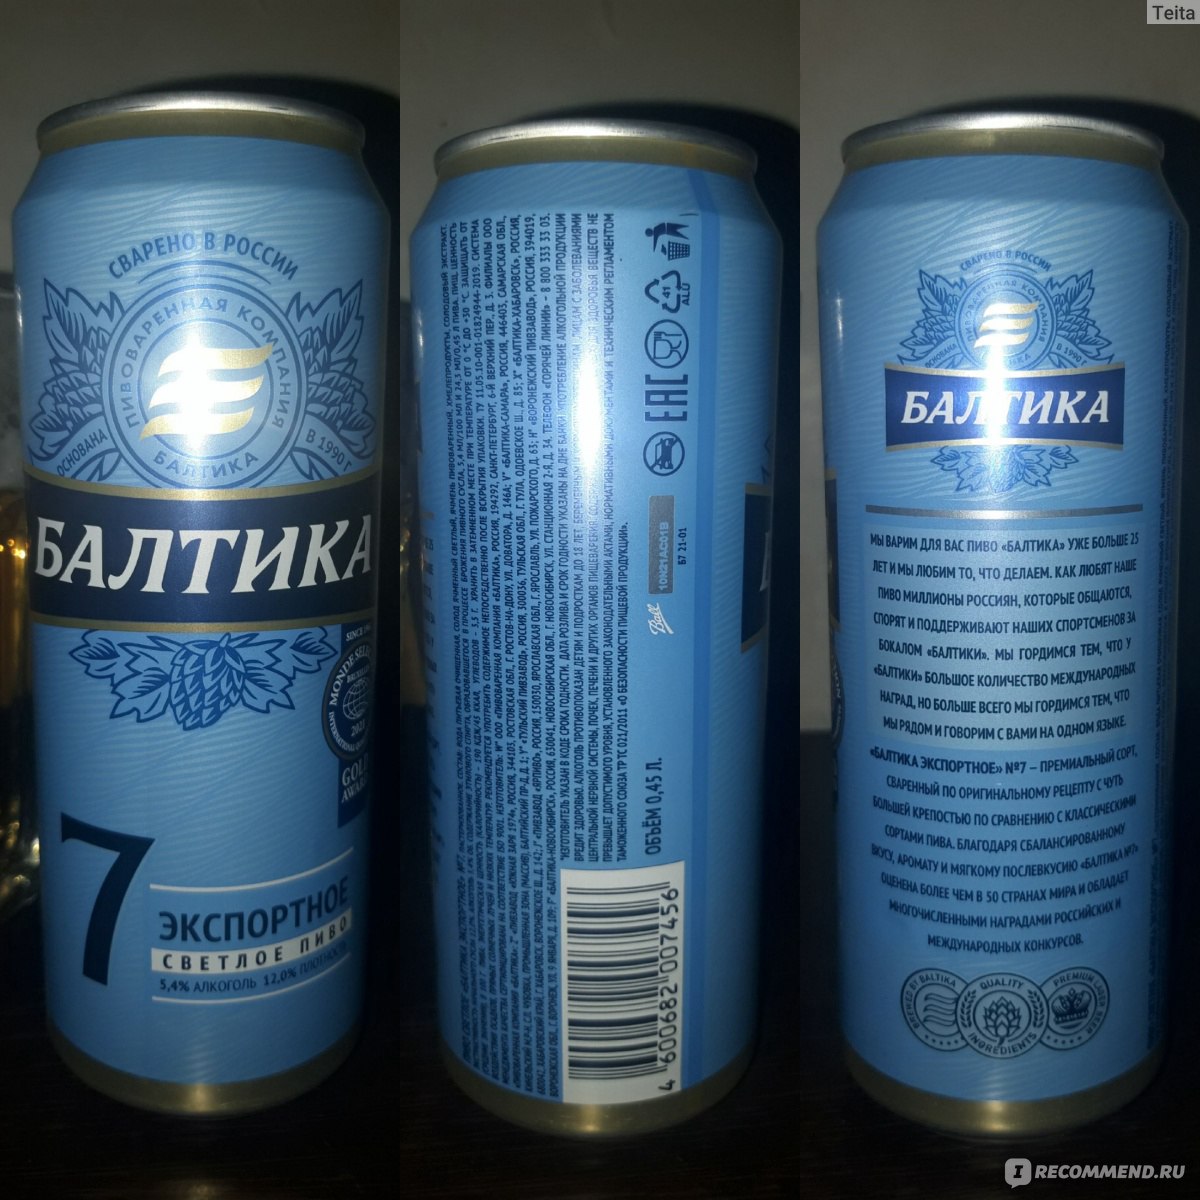 Балтика мягкое пиво фото